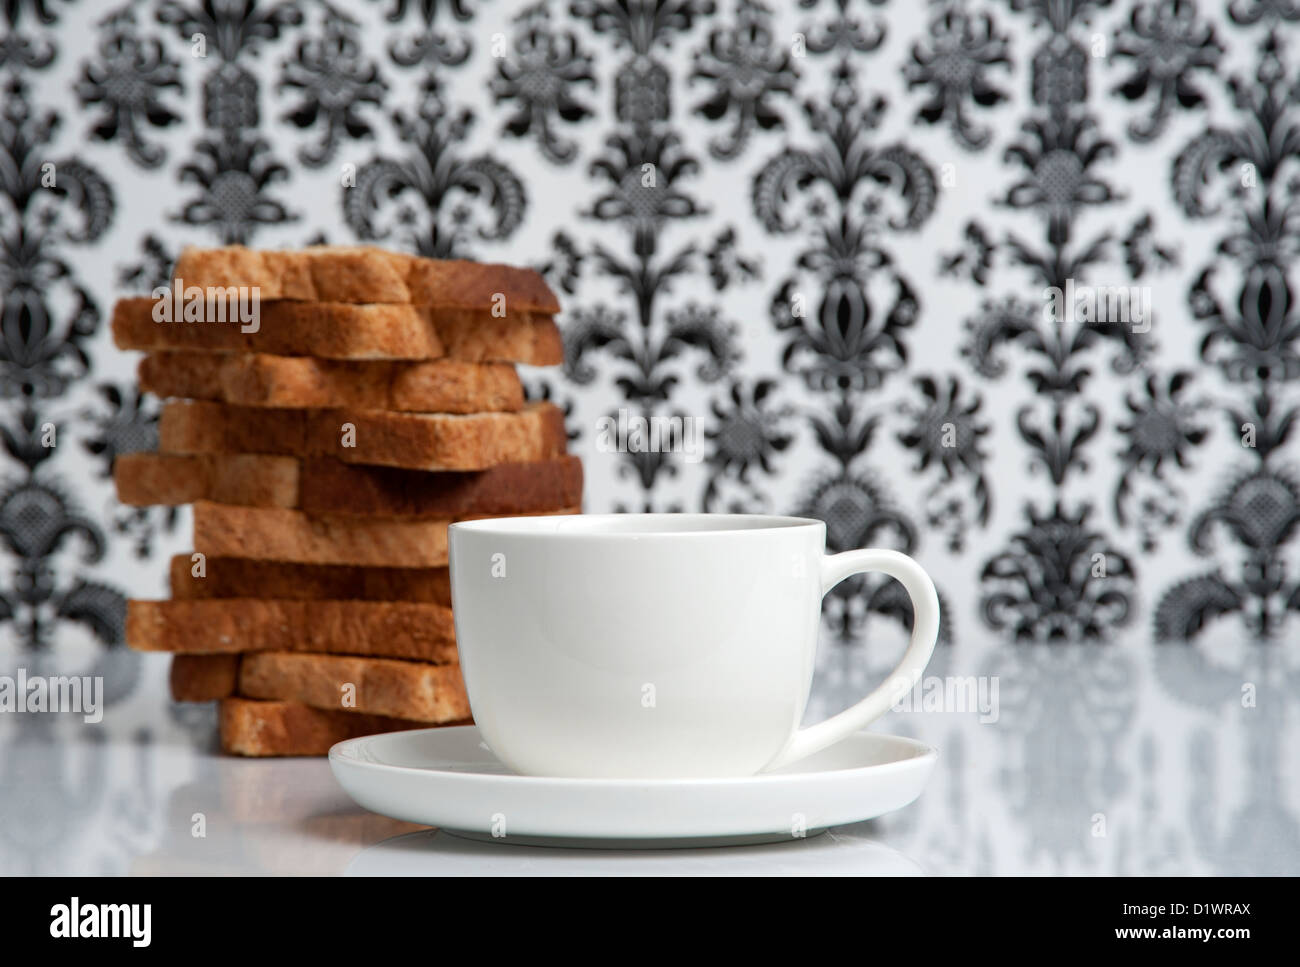 Tasse de café et d'un monticule de toast empilés sur une table Banque D'Images